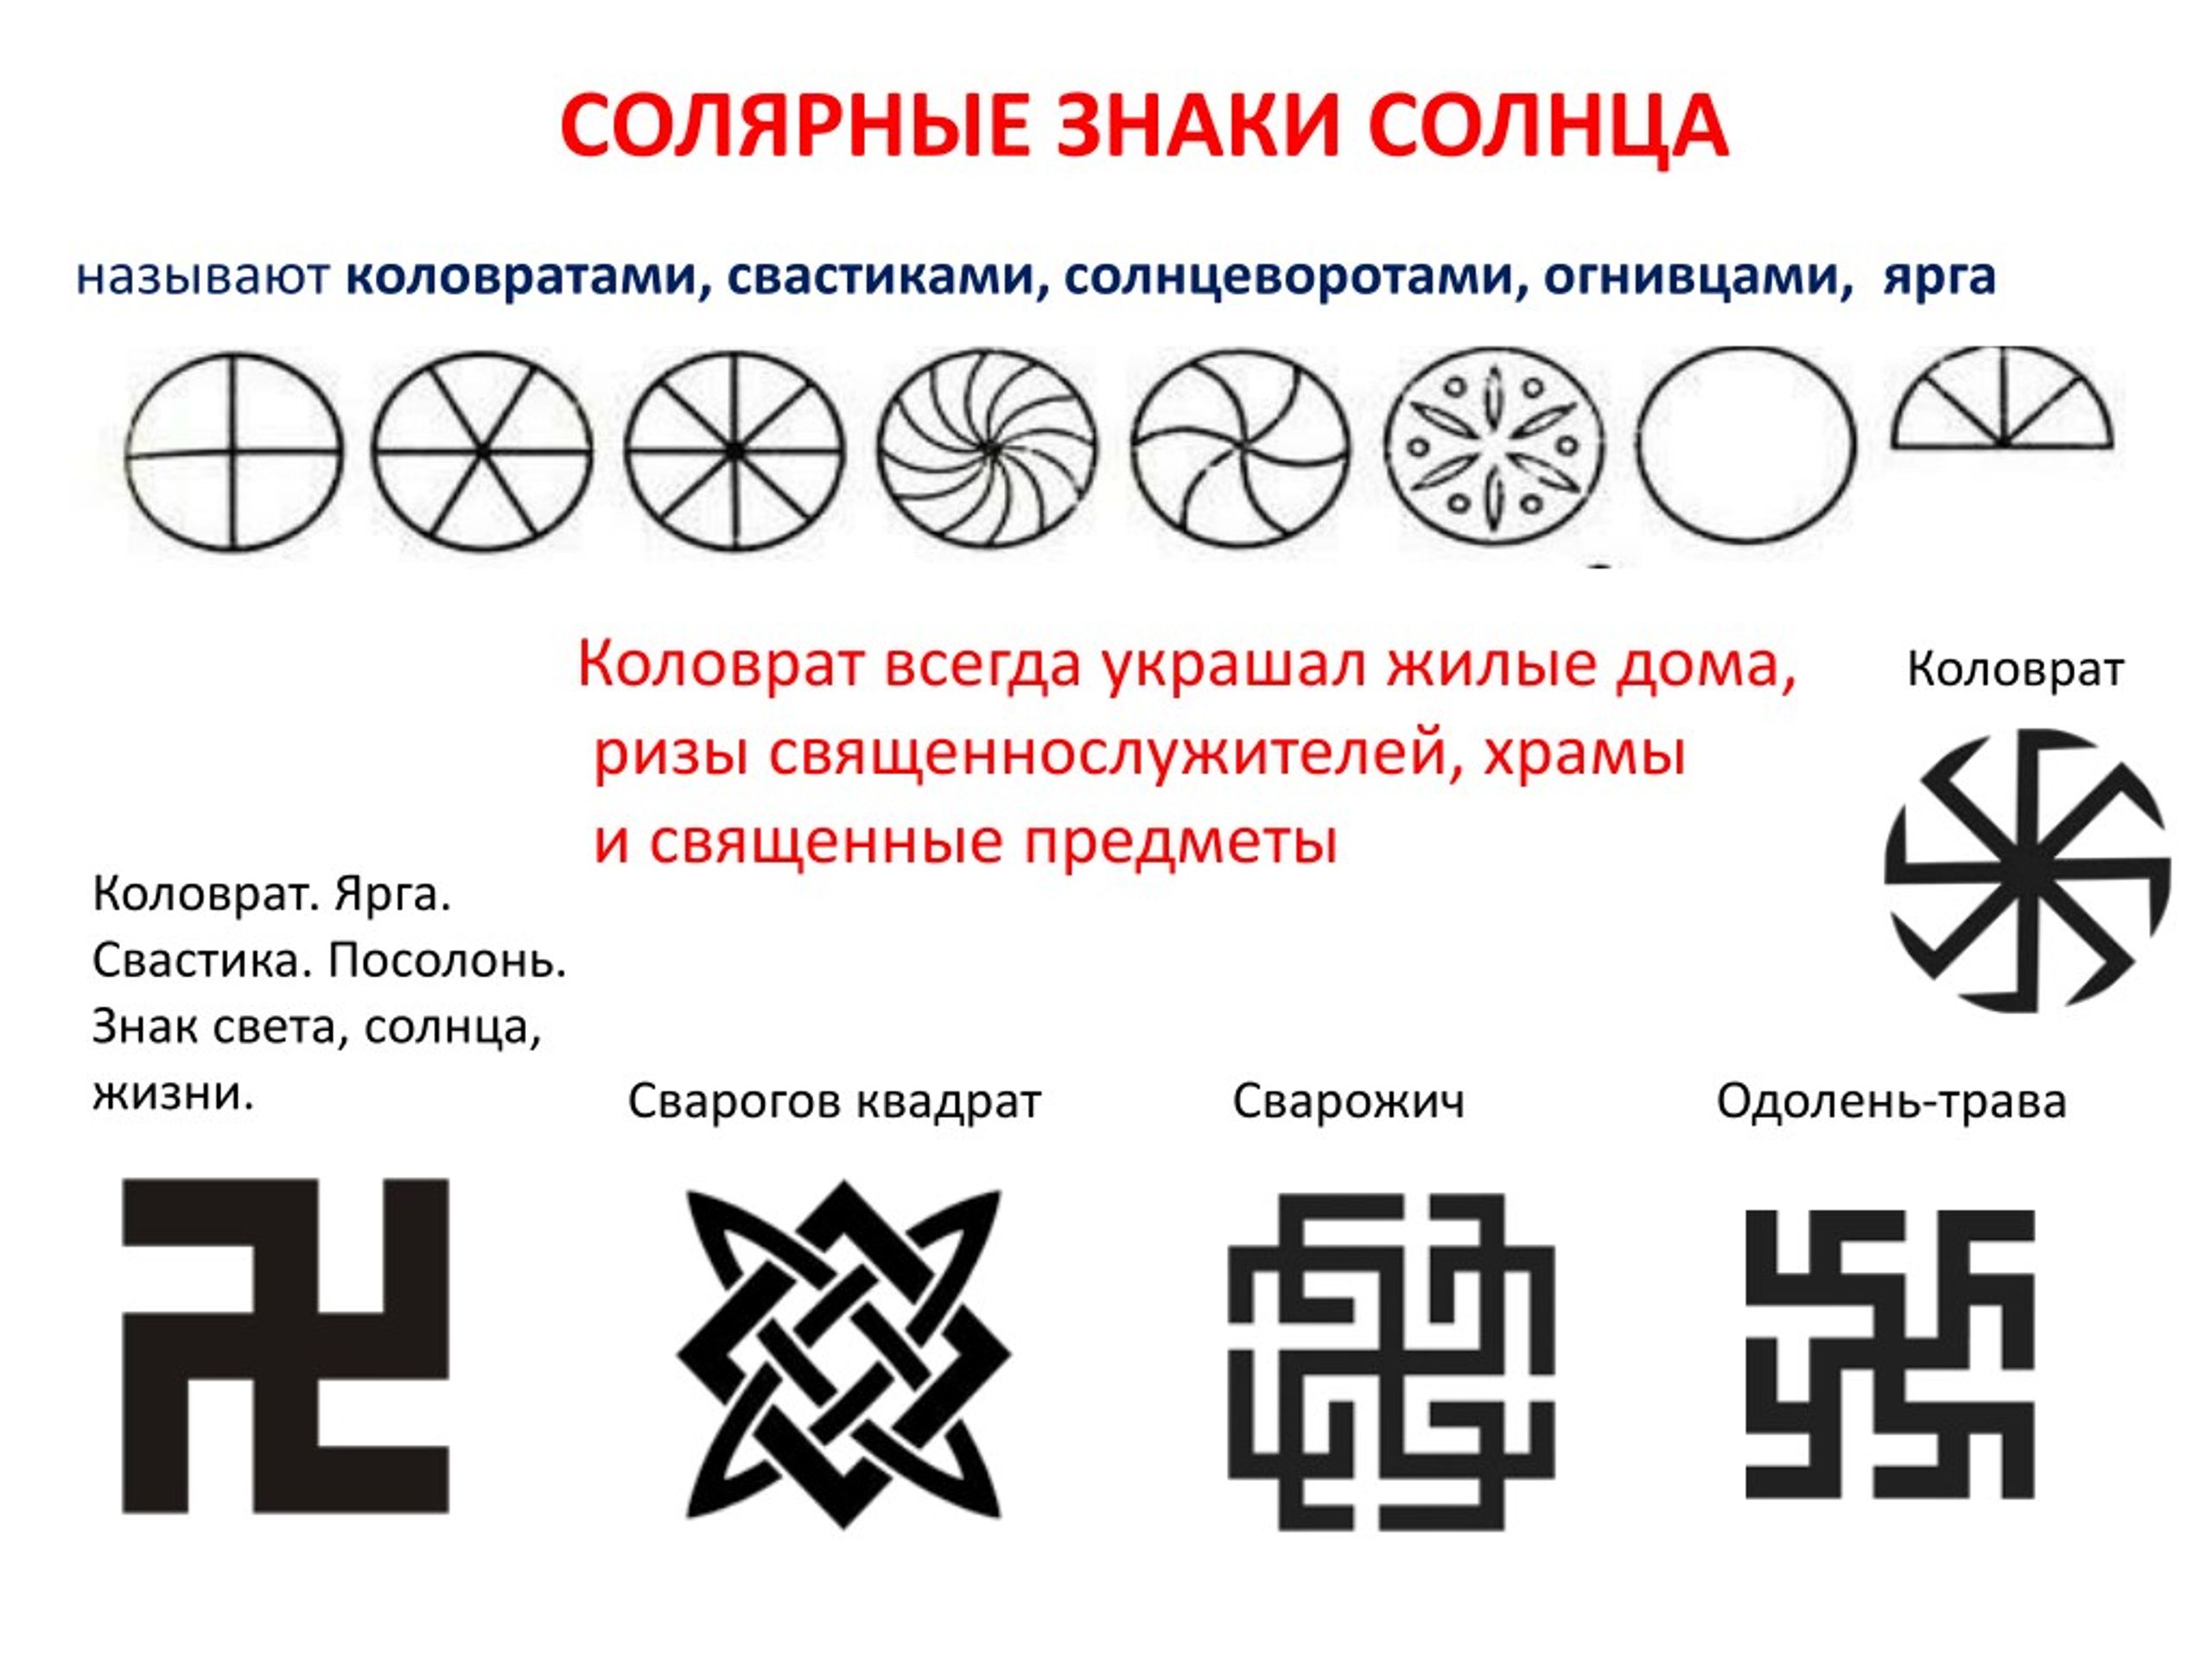 Солярные знаки это. Солярные знаки солнца у славян. Солярные символы древней Руси.